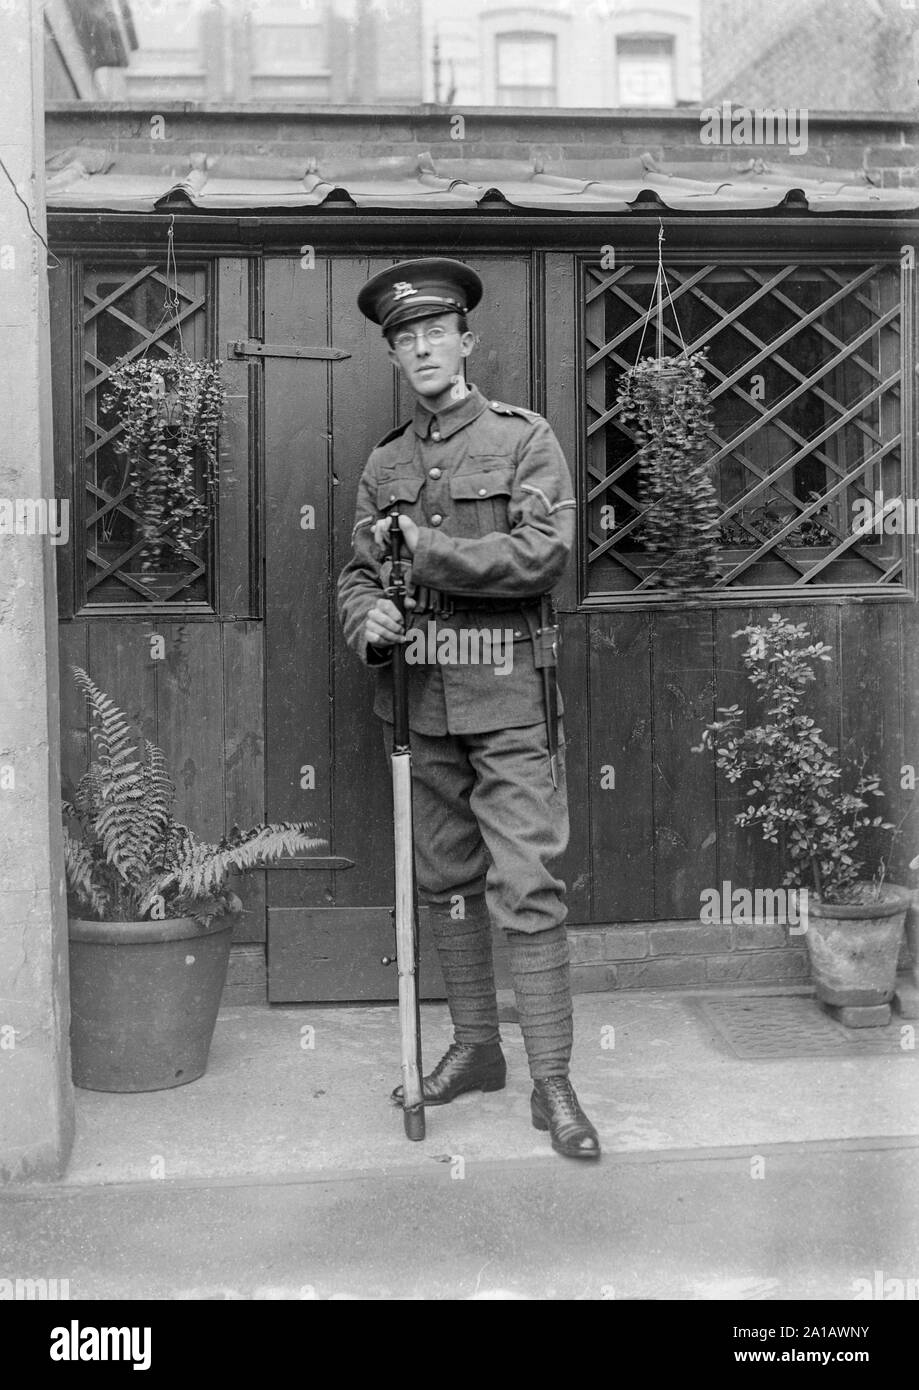 Ein Vintage schwarz-weiß Foto zeigt einen jungen Mann, Tragen einer Brille im Ersten Weltkrieg Soldat der britischen Armee, Uniform gekleidet, im Hinterhof eines Hauses stehen, lehnte sich auf seinem Gewehr. Stockfoto